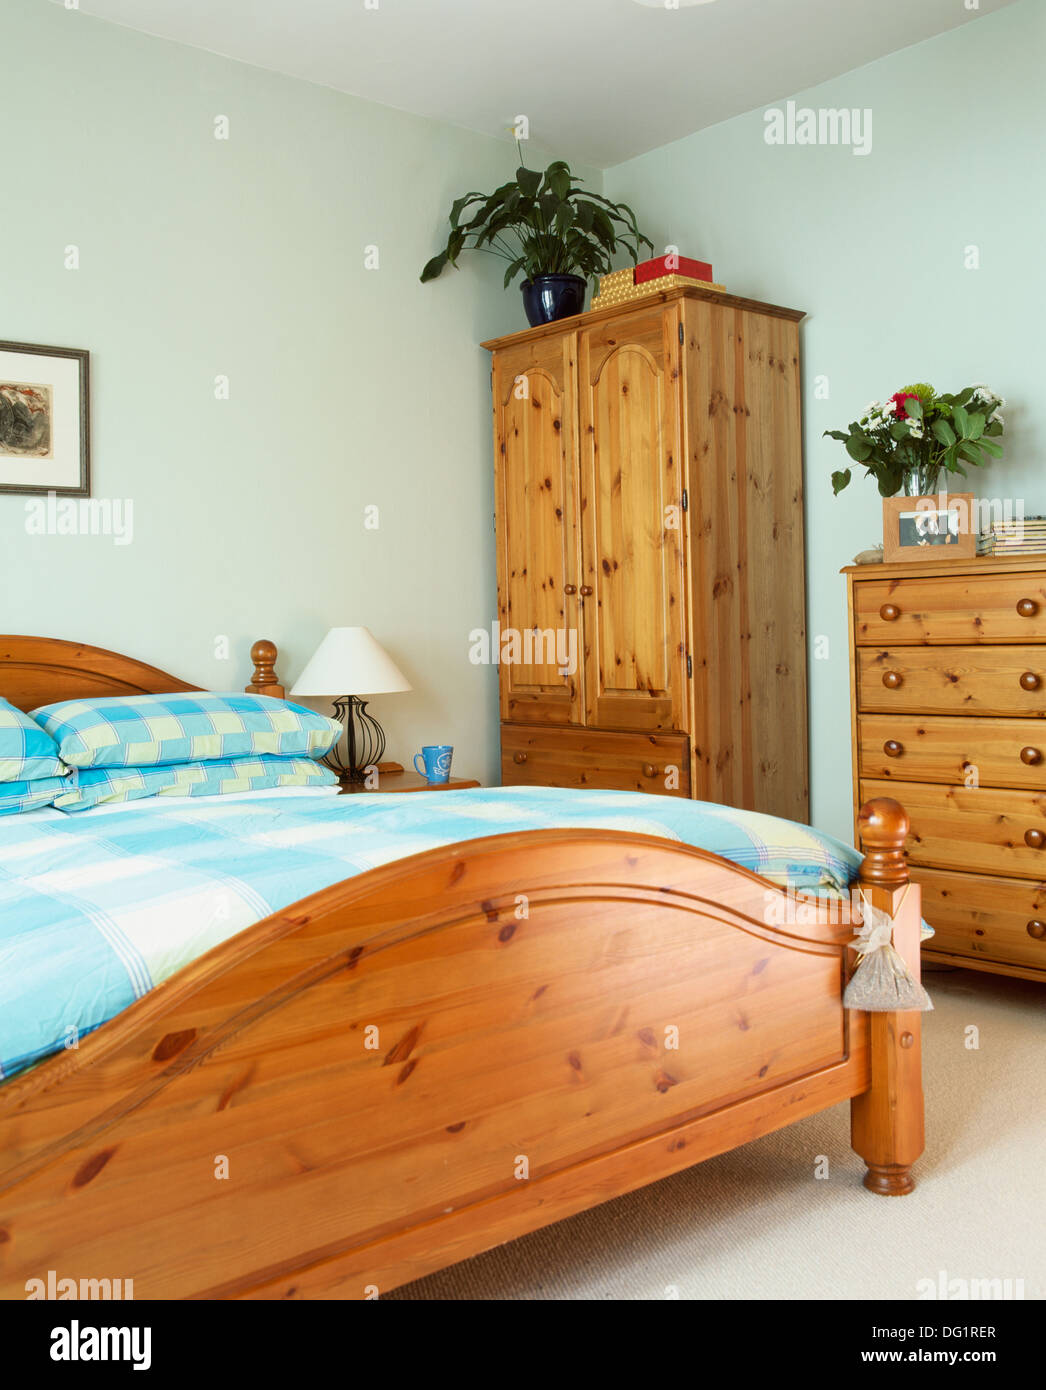 Kiefer Bett mit Türkis überprüft, Kissen und Bettdecke in Wirtschaft-Stil Schlafzimmer mit Kiefer Schrank und Kommode- Stockfoto